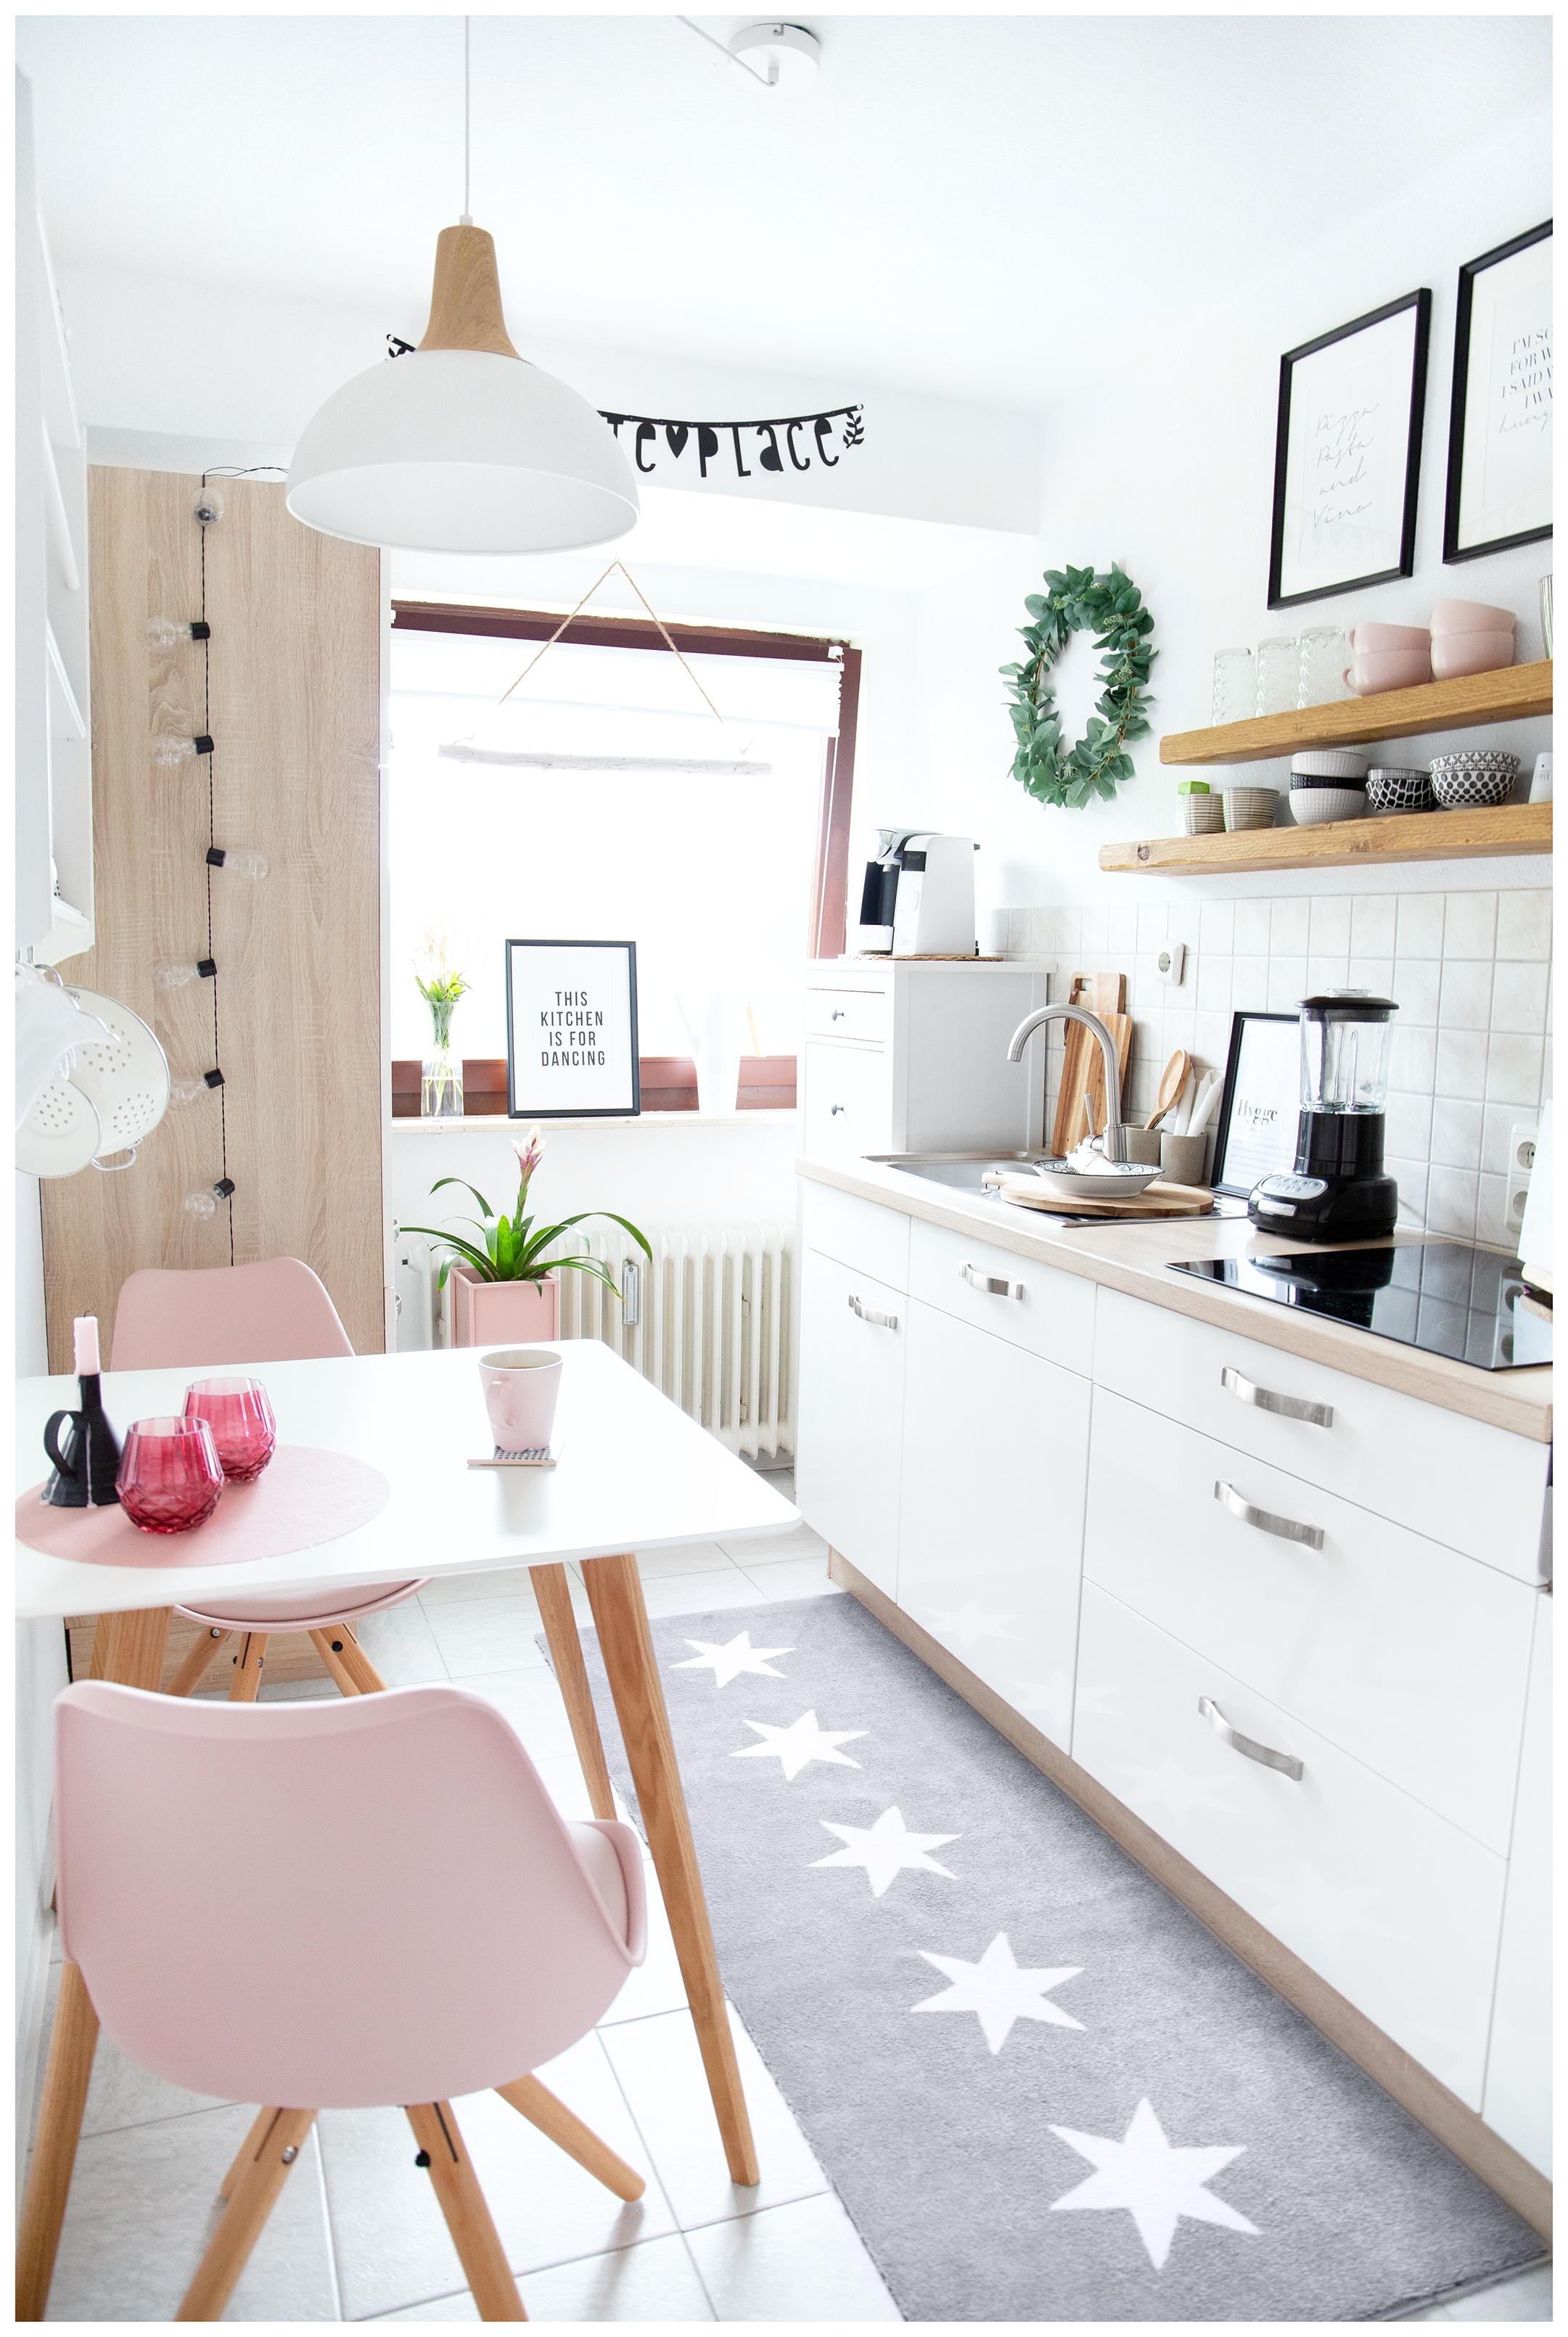 Hier ein Einblick in meine umgestaltete Küche!
#wohnen #deko #rosa
#couchstyle #küche #interior #einrichtung 